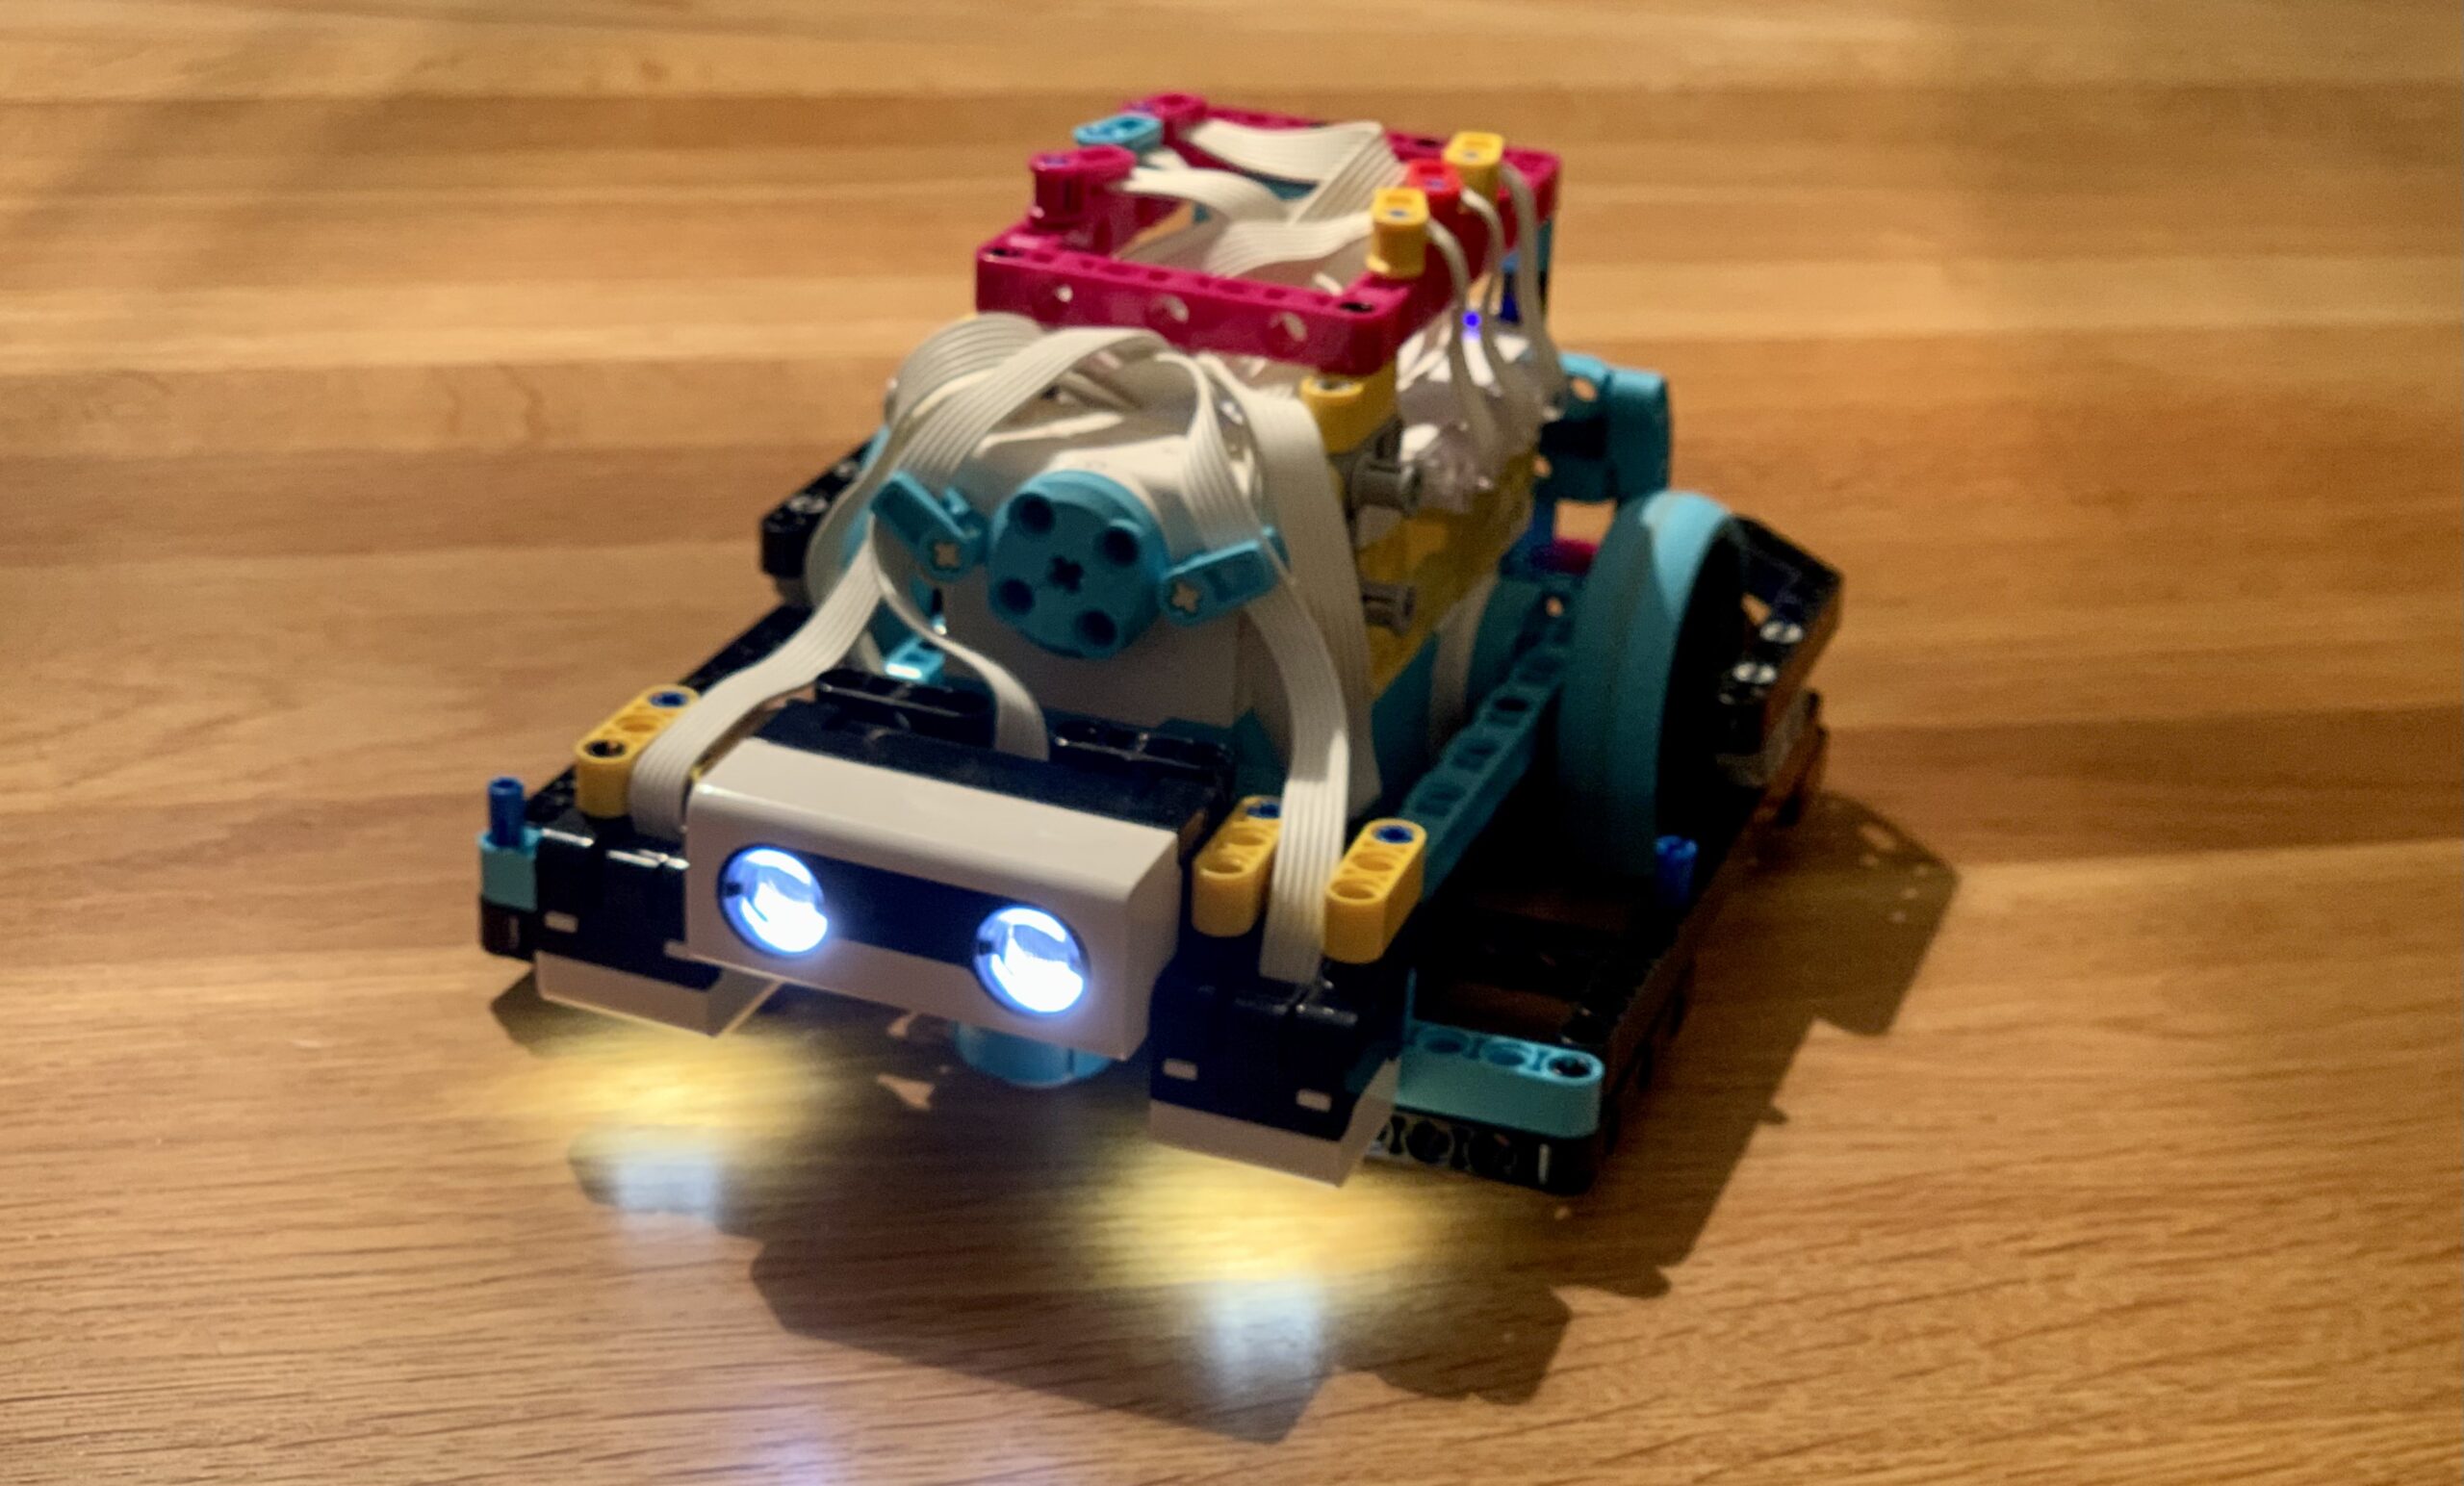 Der Farbsensor des LEGO Education Robotik-Sets SPIKE Prime liefert nicht immer und auf Anhieb die Messwerte, die man erwartet. Hier fassen wir mögliche Ursachen und Lösungsansätze zusammen.